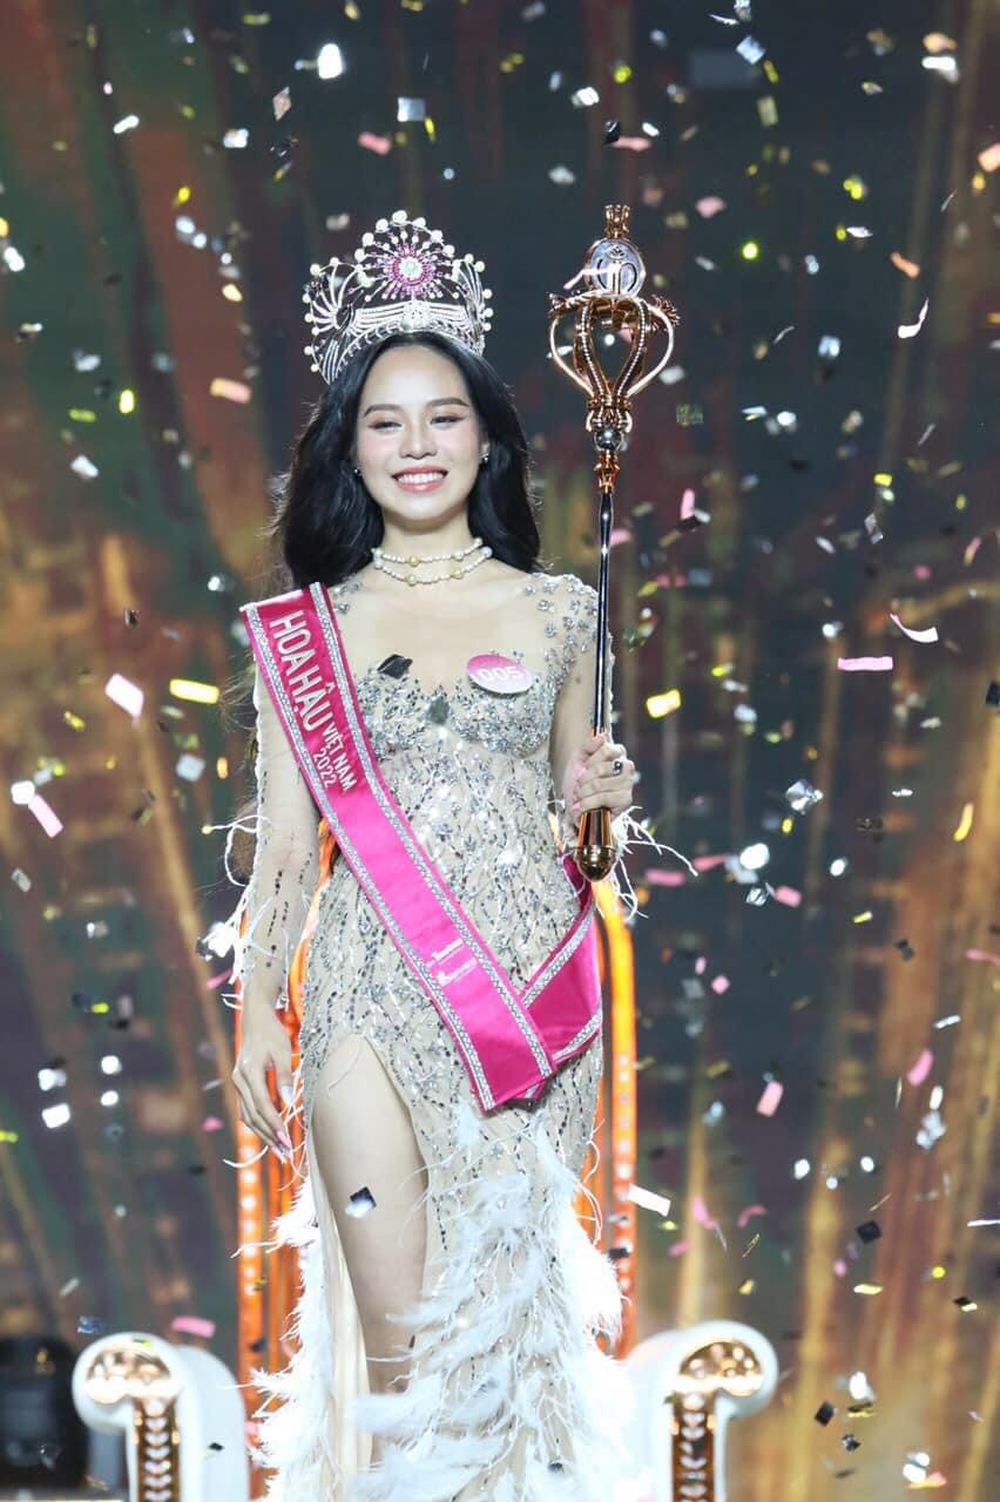 Tác giả bộ đầm dạ hội cho tân Hoa hậu Thanh Thủy bật mí ý nghĩa ẩn sâu trong thiết kế - Ảnh 3.